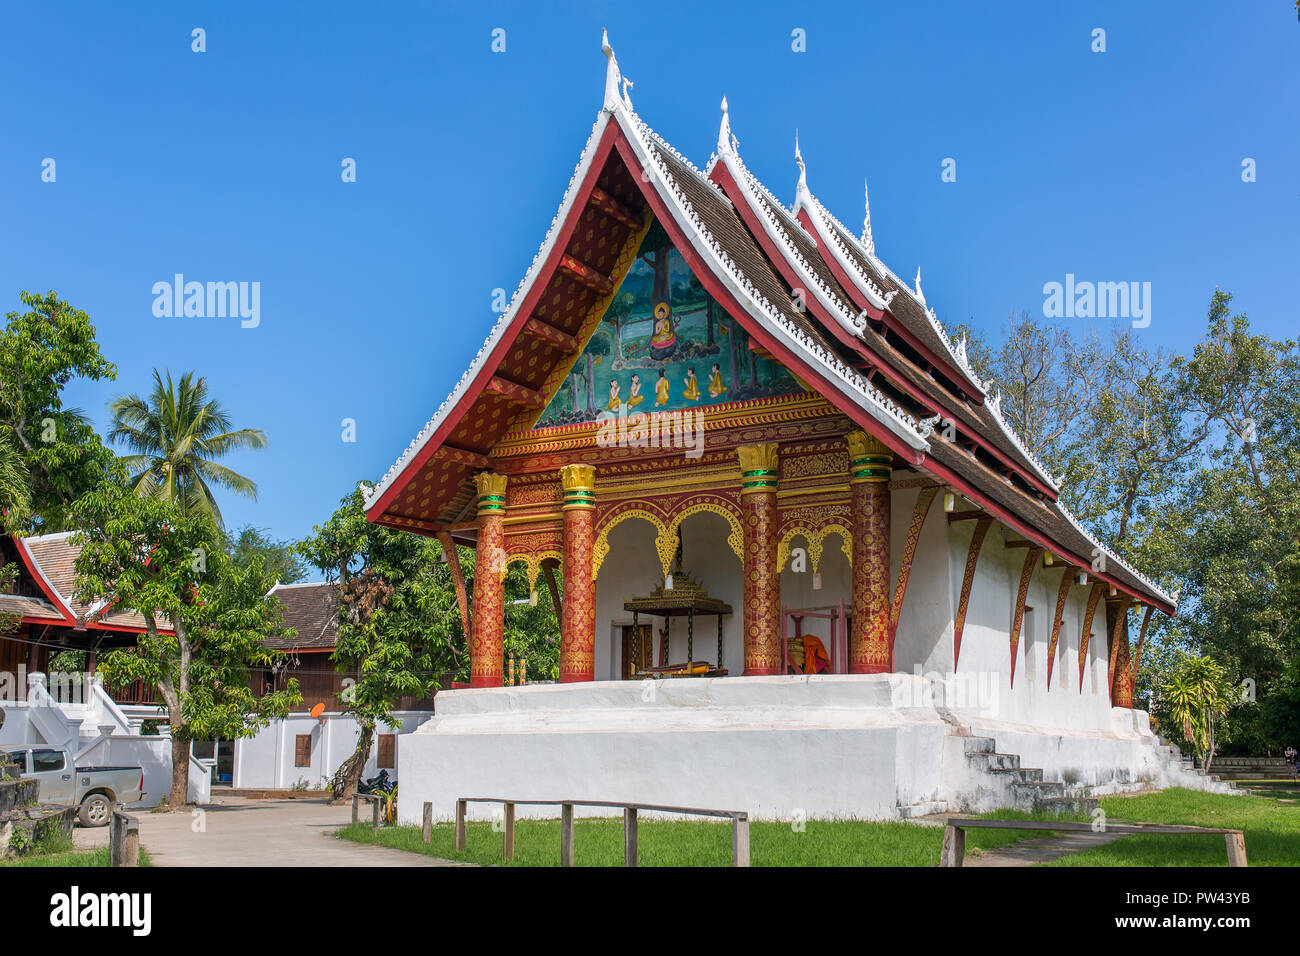 Wat Aham Temple in Luang Prabang, Laos Stock Photo